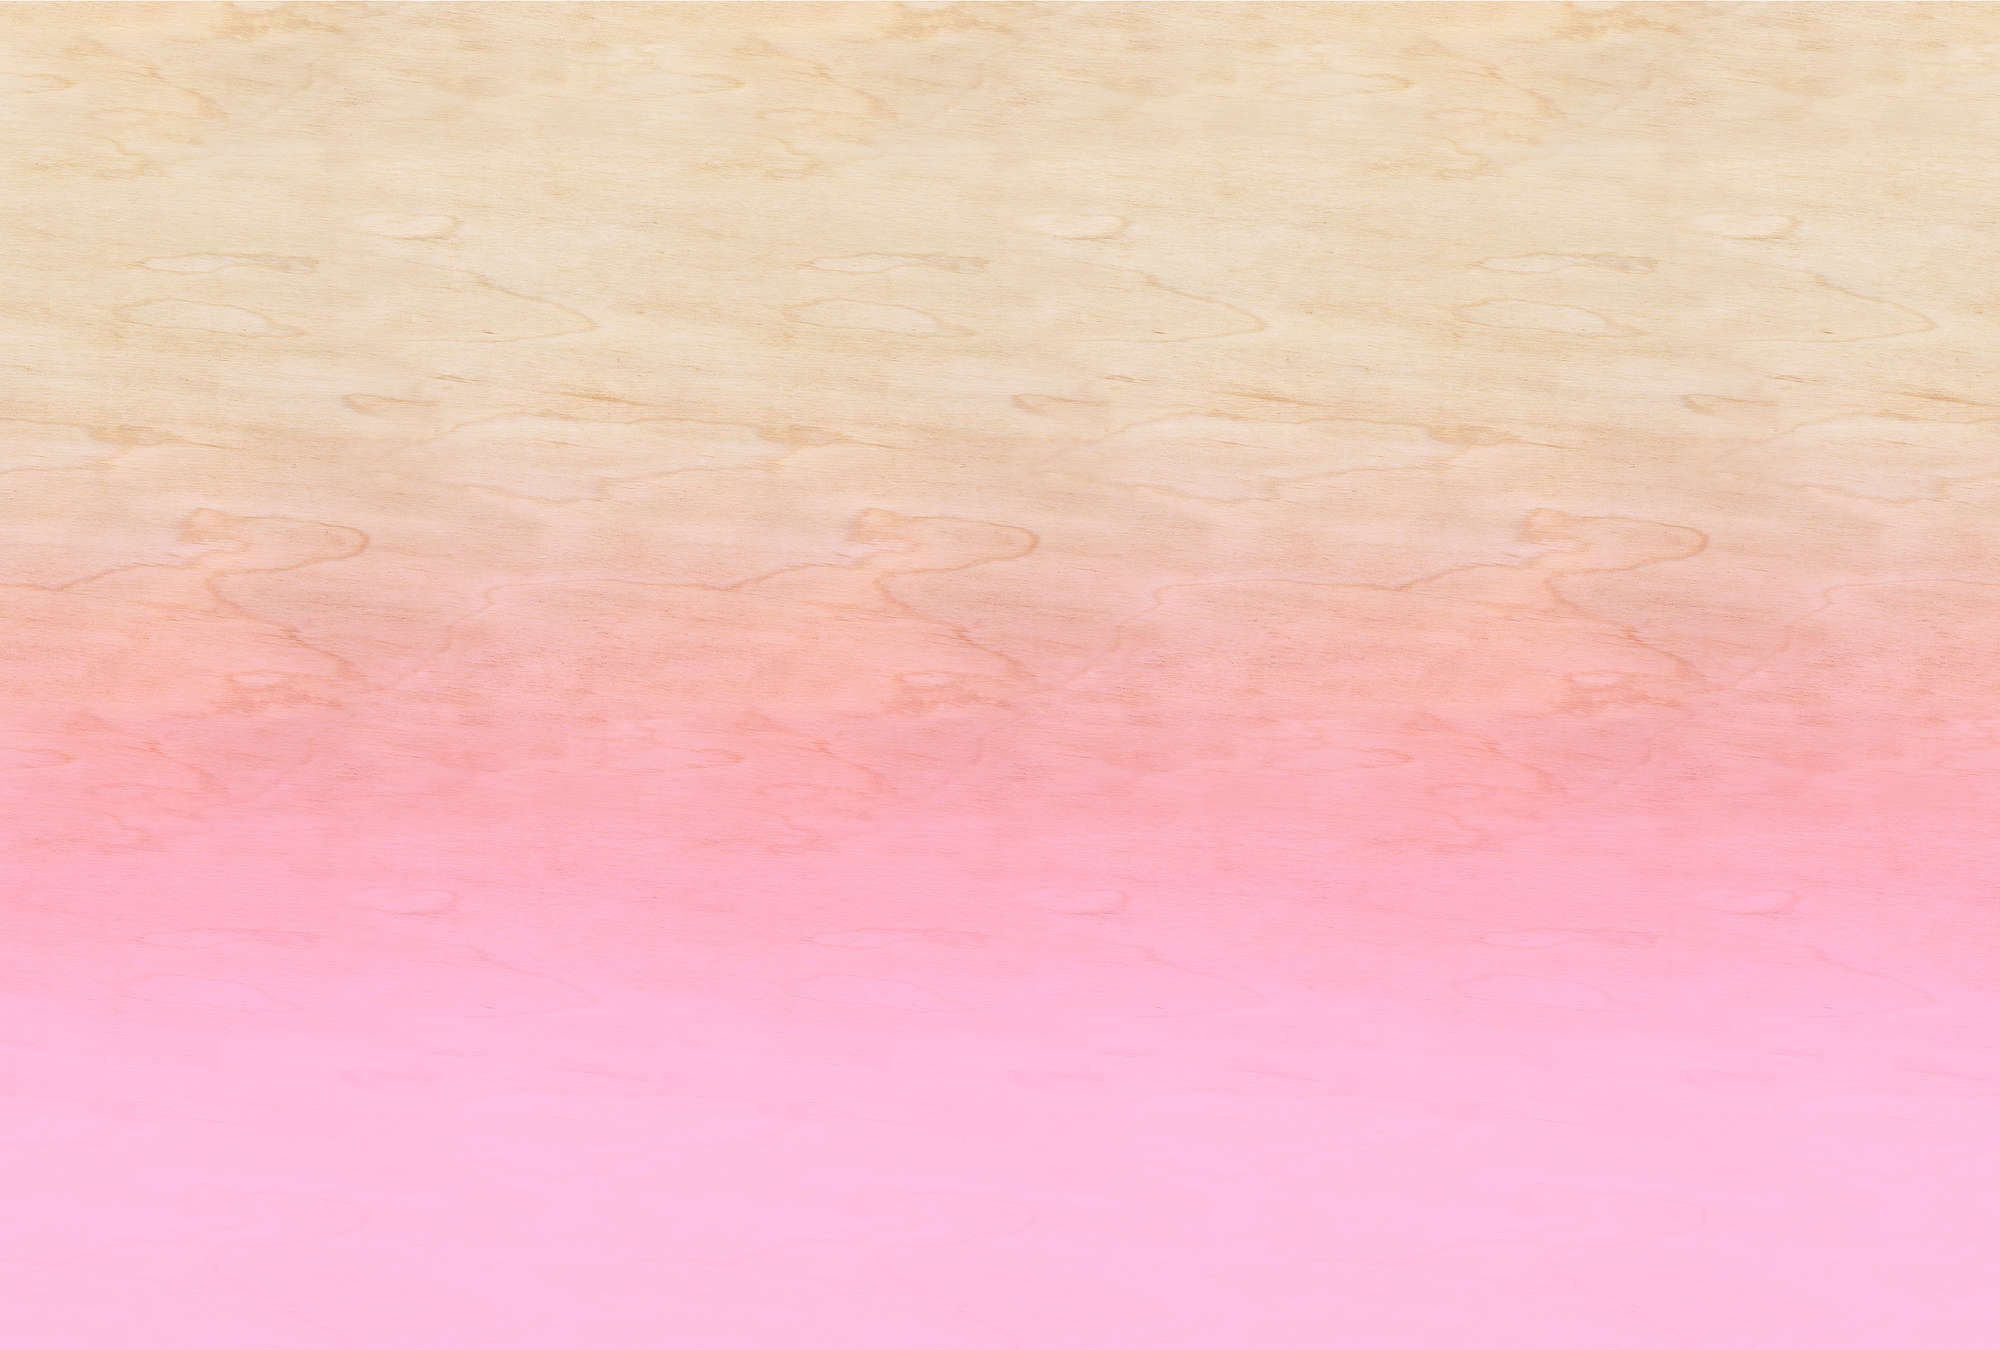             Taller 1 - Papel pintado rosa efecto ombre y grano de madera
        